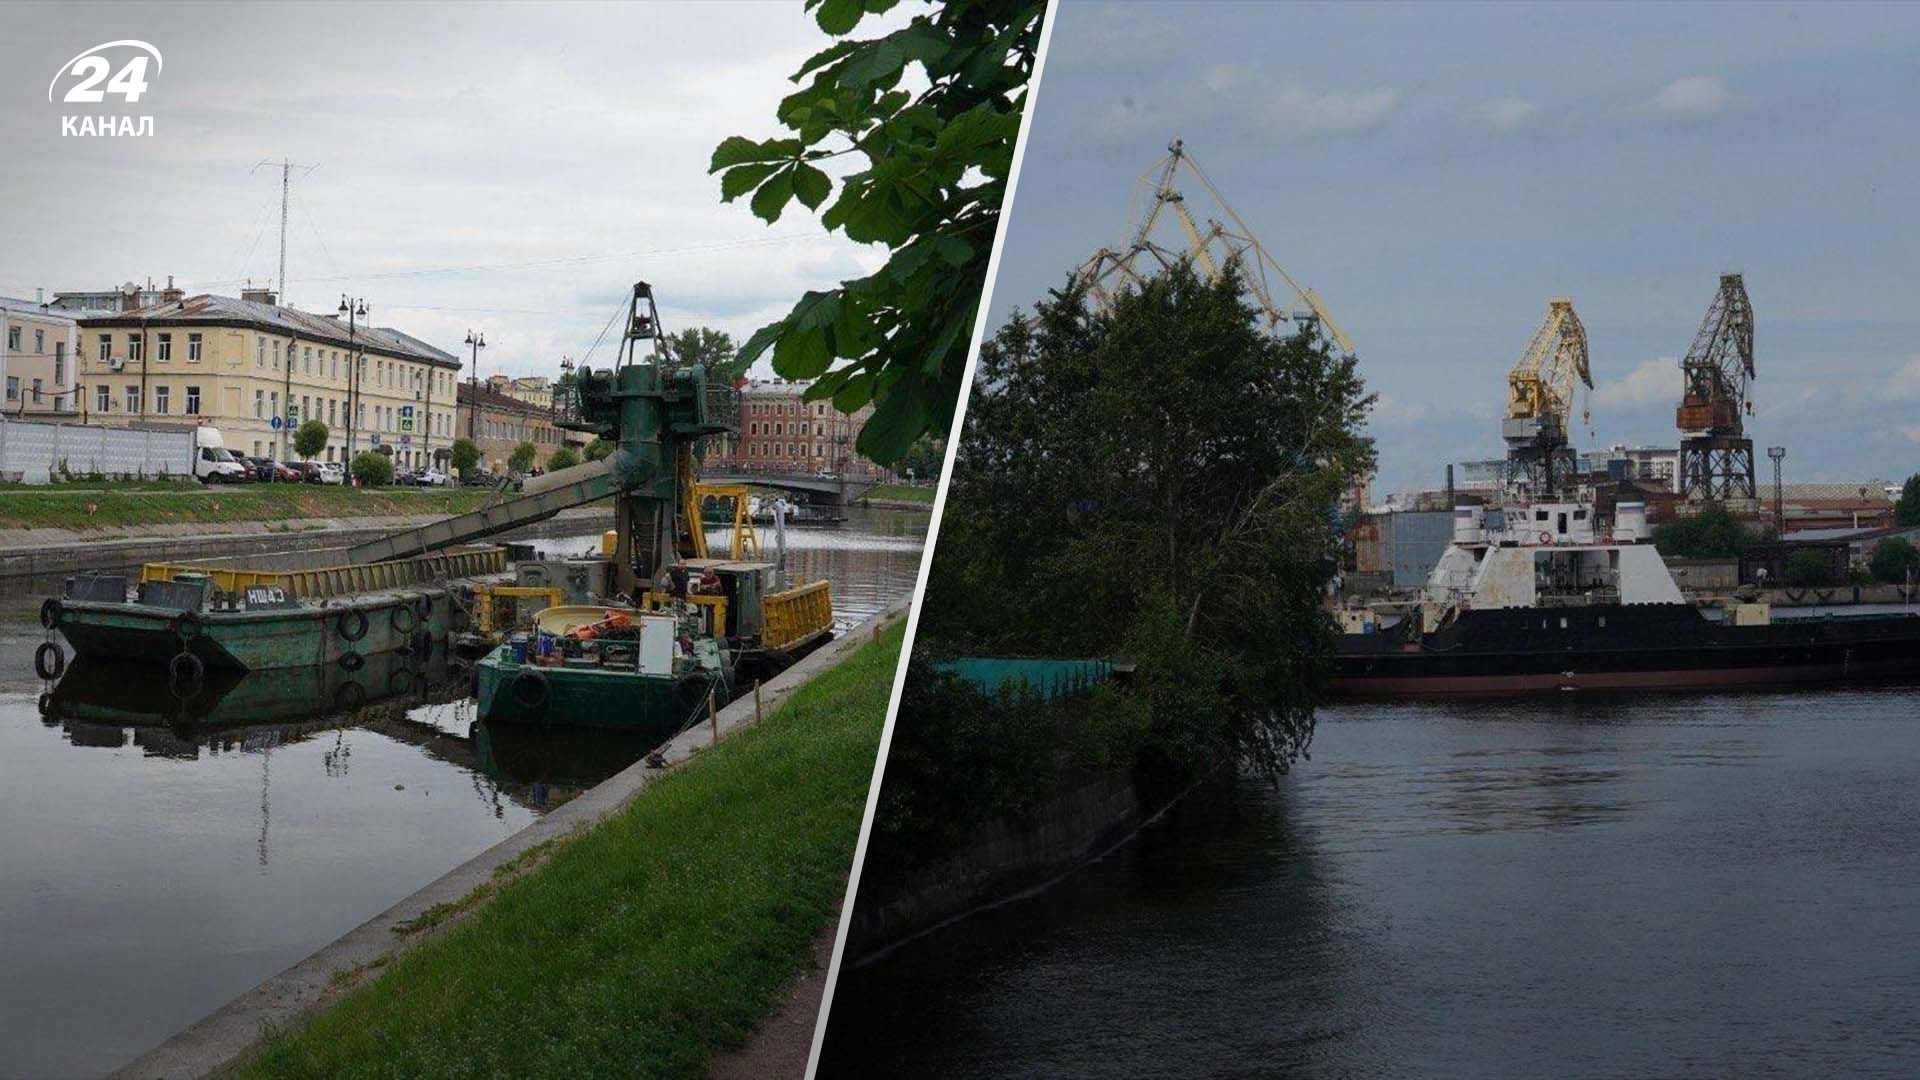 "Атэш" побывал на месте строительства подводных лодок в Санкт-Петербурге